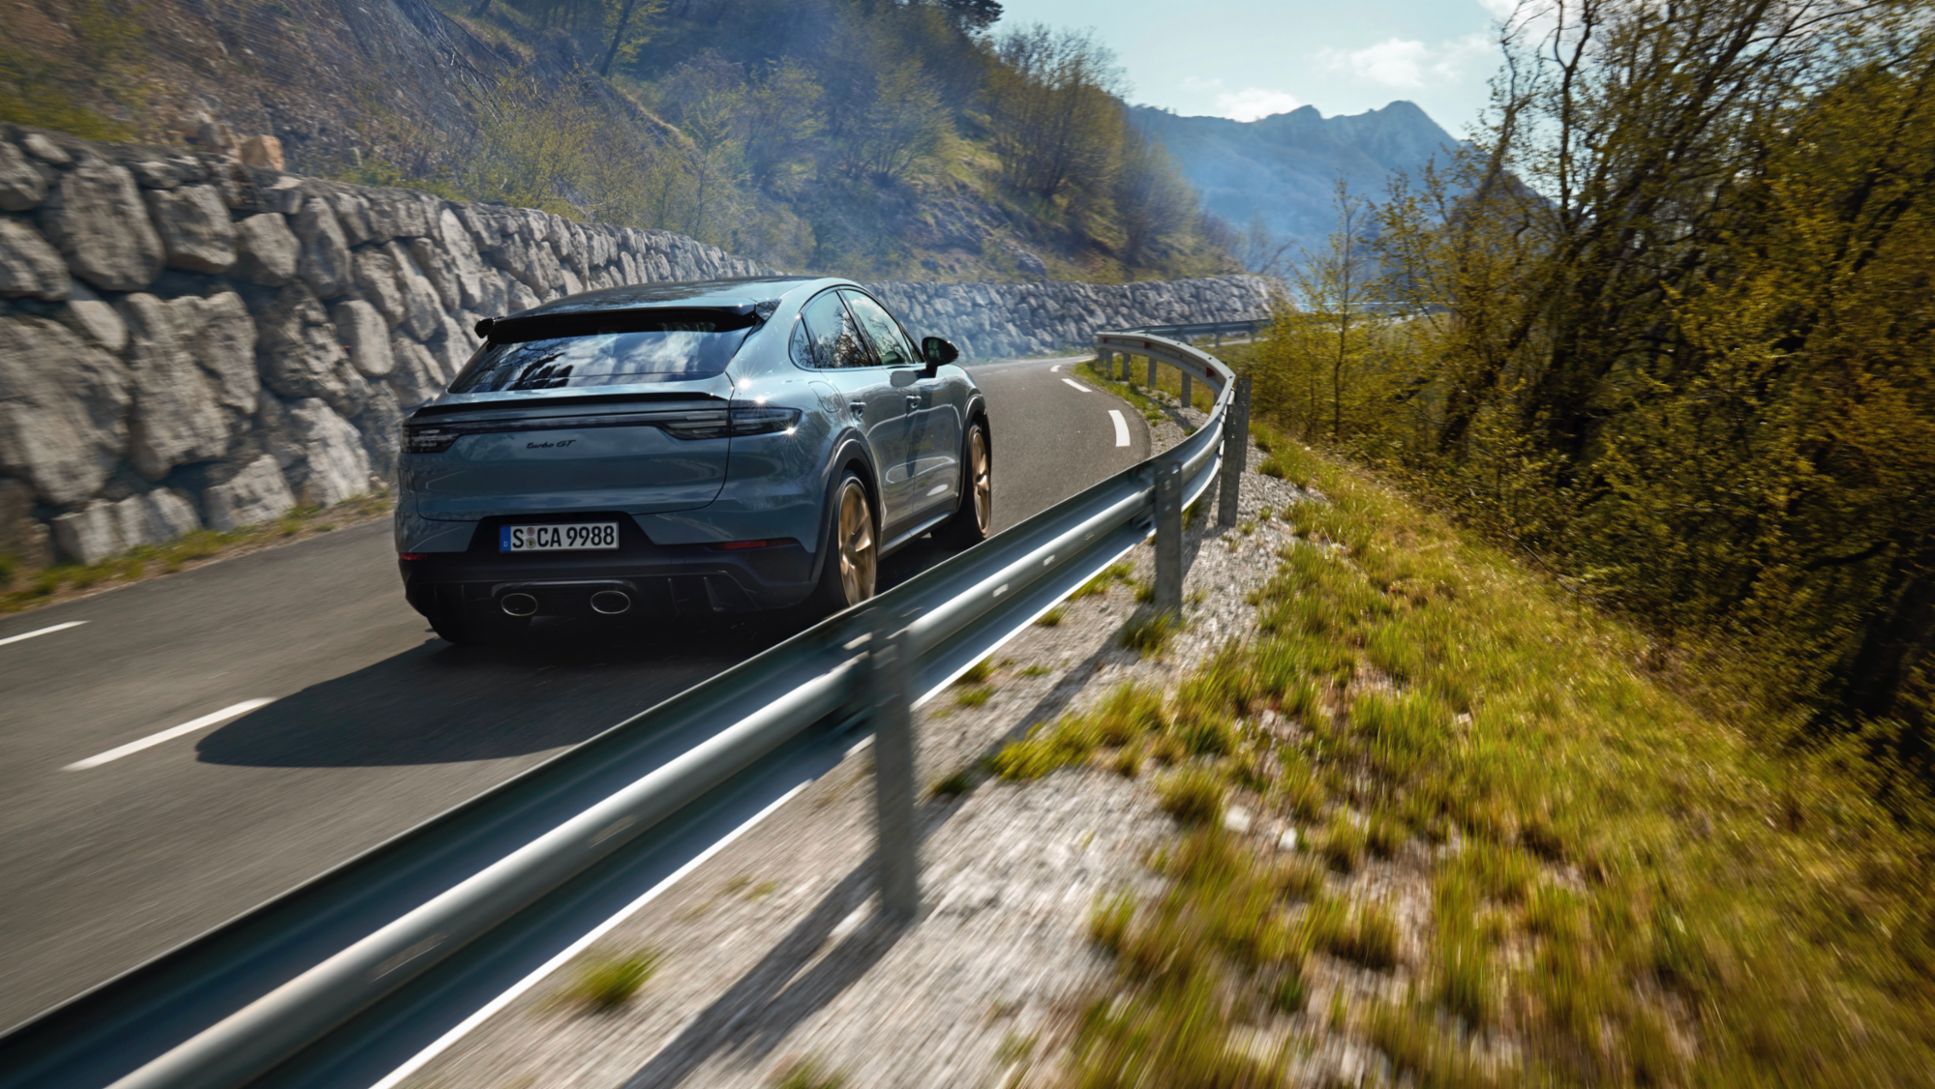 Новый полностью электрический внедорожник Porsche будет ориентирован на роскошь